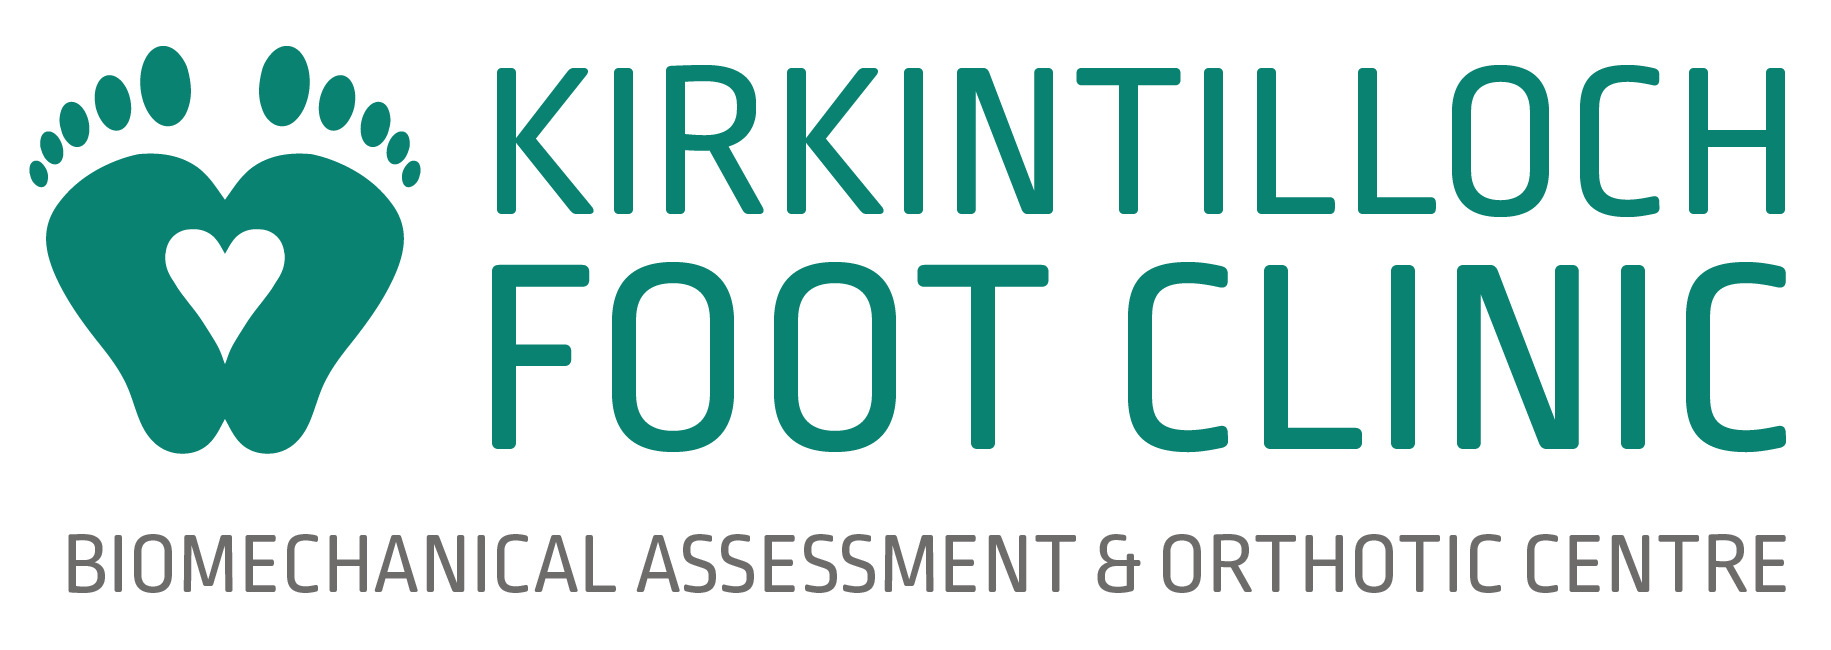 Kirkintilloch Foot Clinic logo